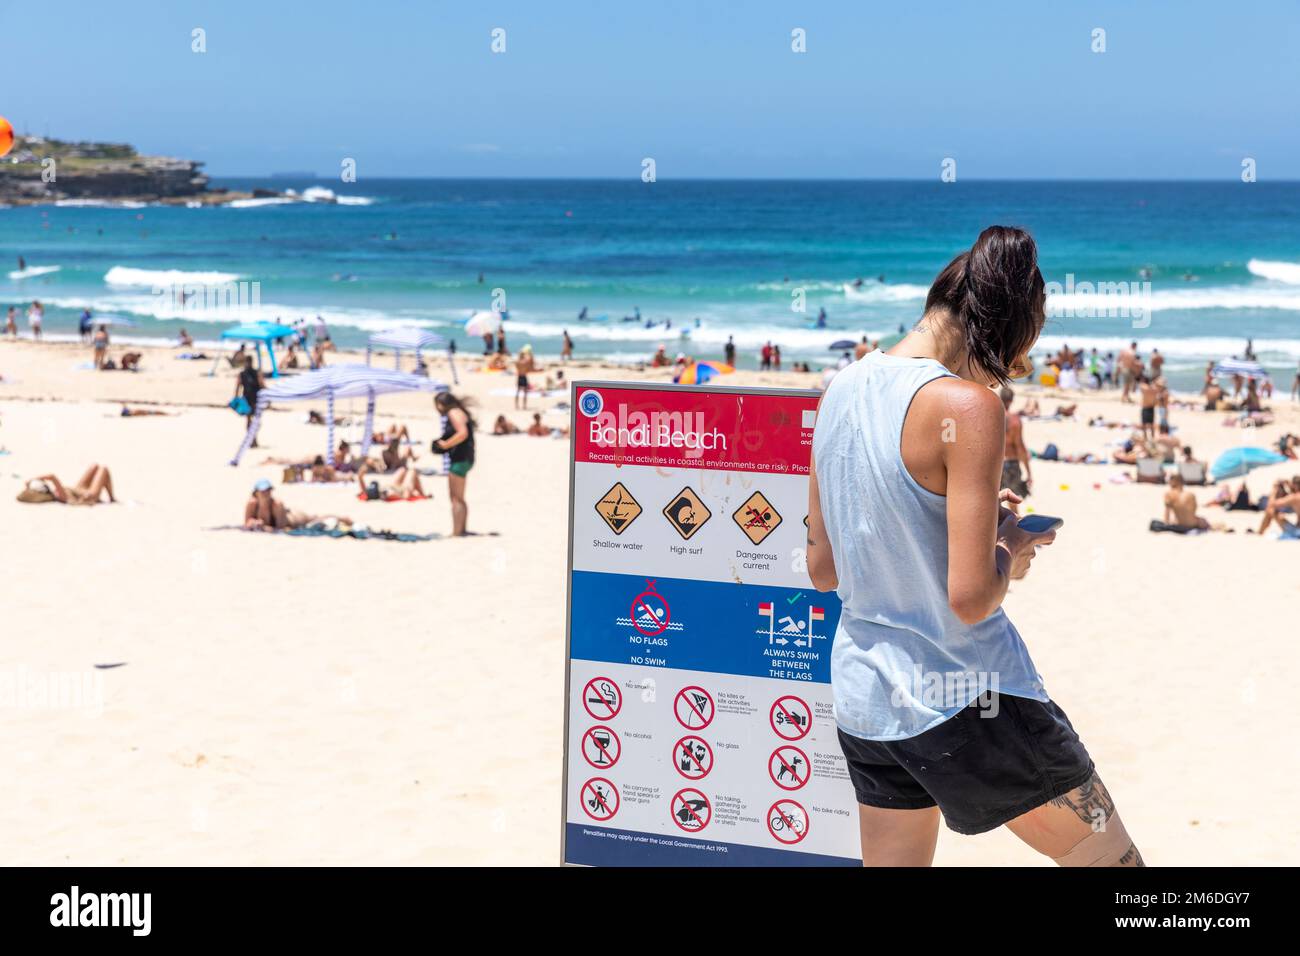 Bondi Beach Sydney 2023, jeune femme brune envoyant des SMS sur son téléphone mobile, des tatouages de jambe et de bras, se tenait à côté du panneau Bondi Beach, Sydney, Nouvelle-Galles du Sud, Australie Banque D'Images